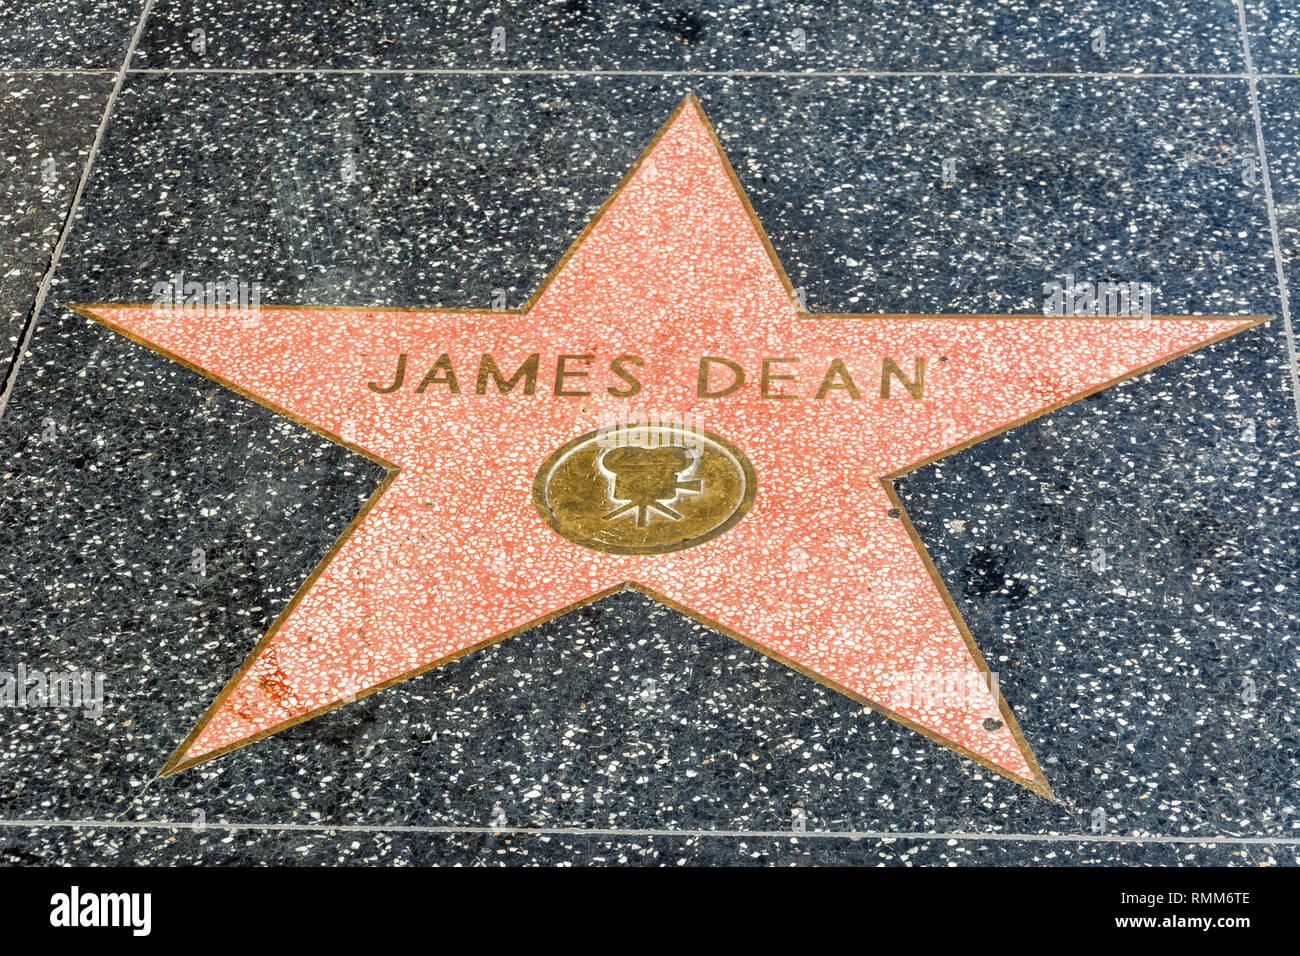 Los Angeles, California, Stati Uniti d'America - 8 gennaio 2017. James Dean della stella sulla Hollywood Walk of Fame a Los Angeles, CA. Foto Stock